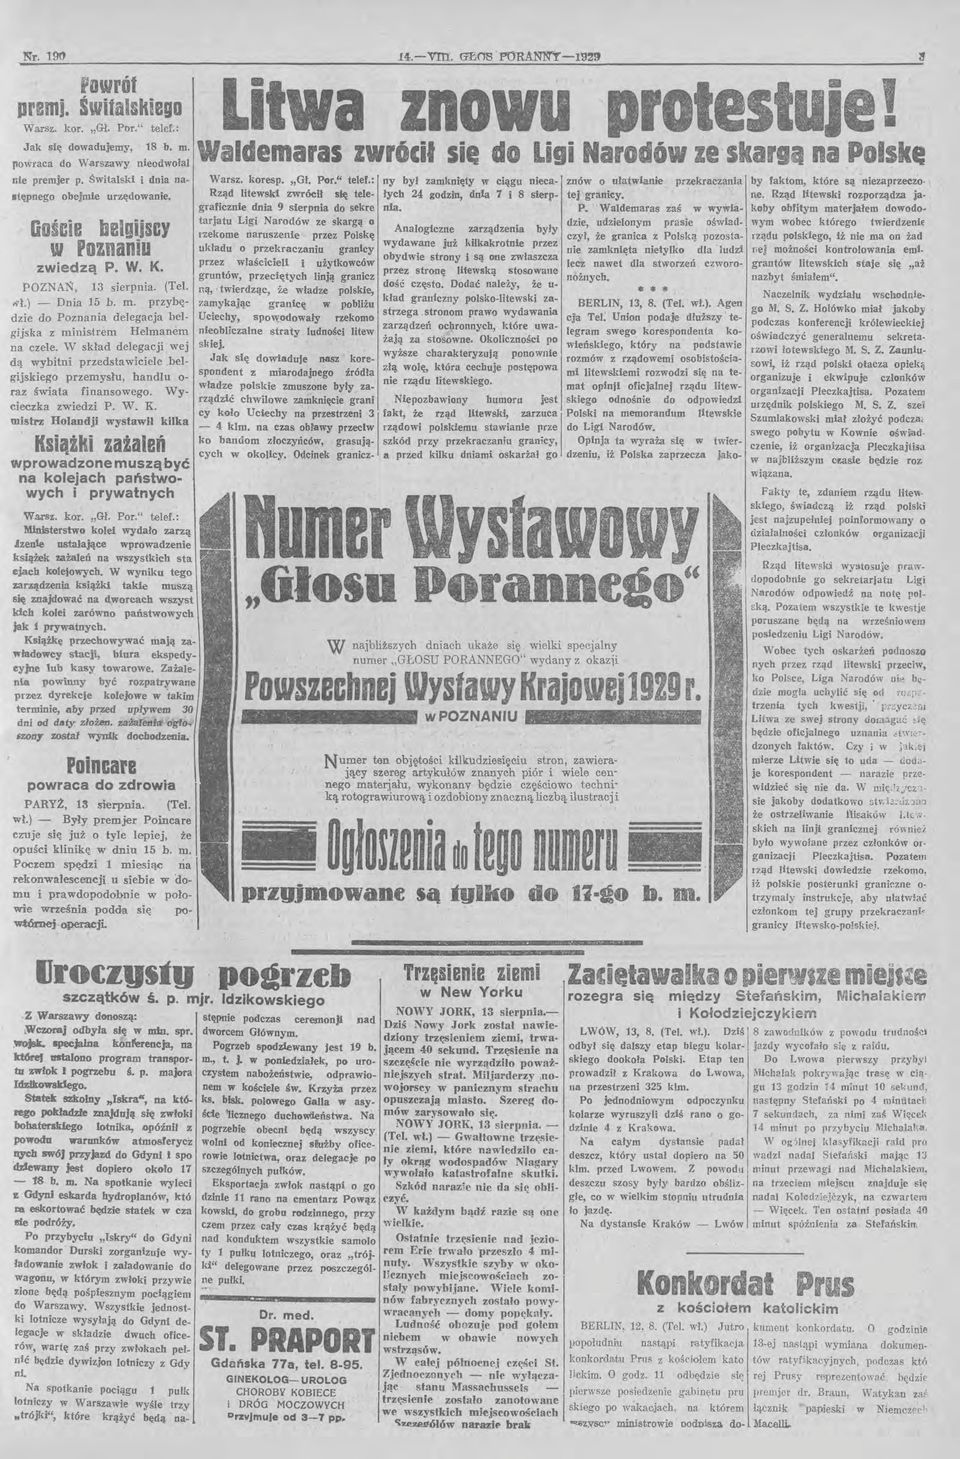 : Rząd litewski zwrócił się telegraficznie dnia 9 sierpnia do sekre tarjatu Ligi Narodów ze skargą o rzekome naruszenie przez Polskę 14.-v.rn:.